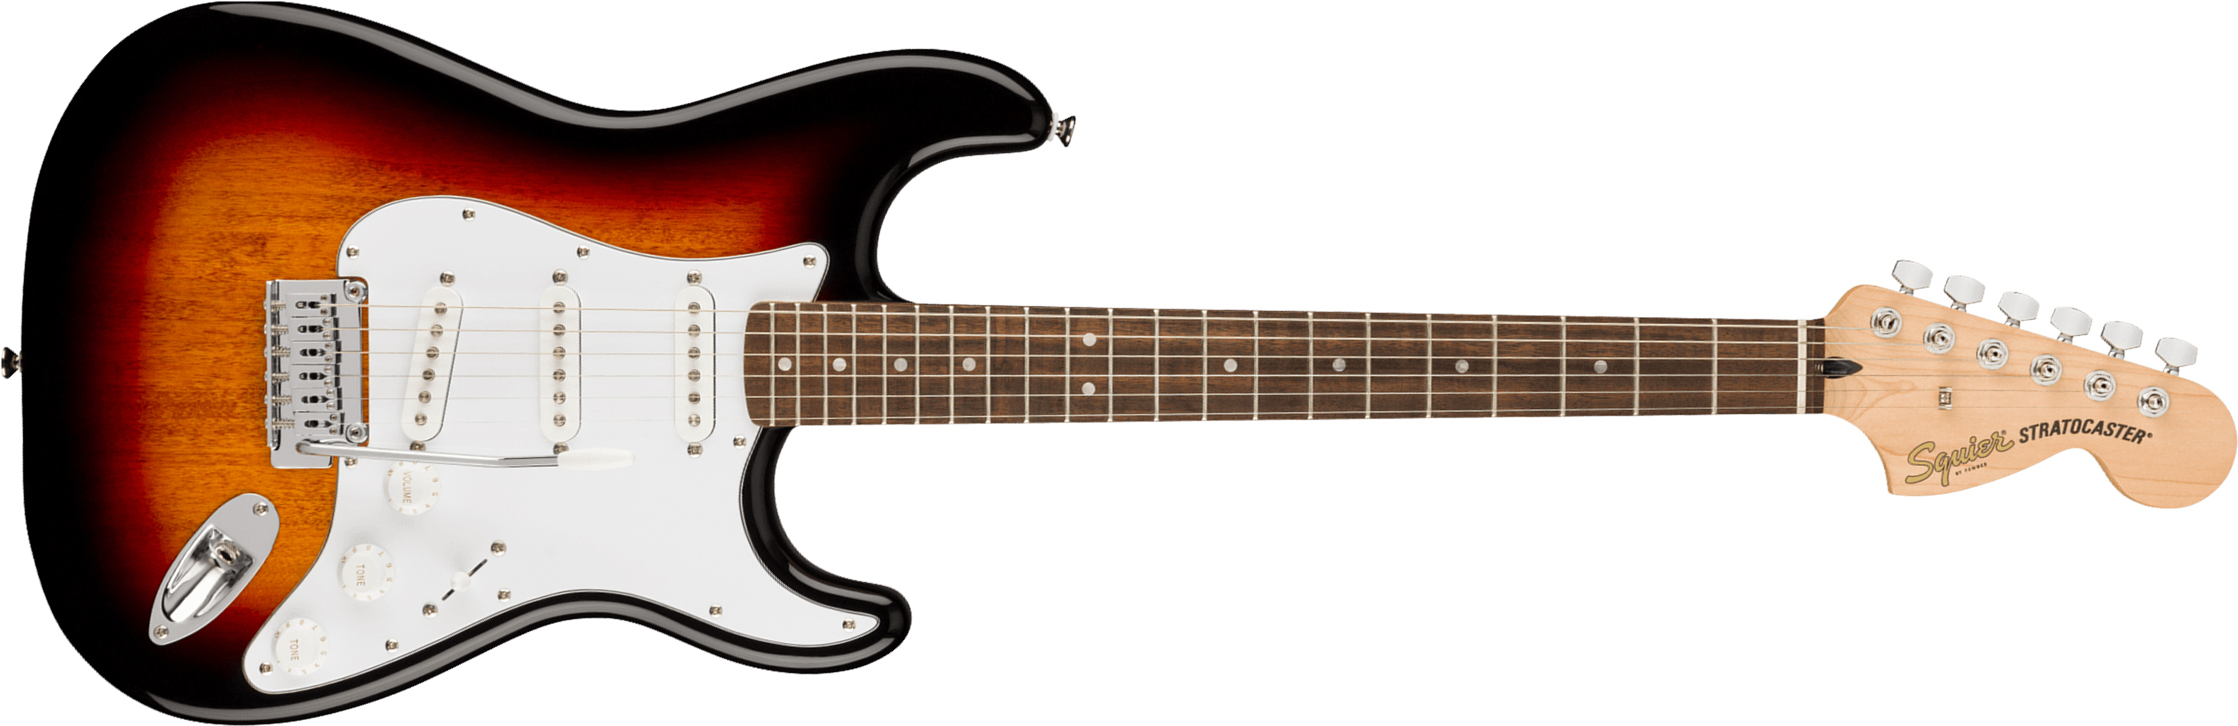 Squier Strat Affinity 2021 Sss Trem Lau - 3-color Sunburst - Str shape electric guitar - Main picture